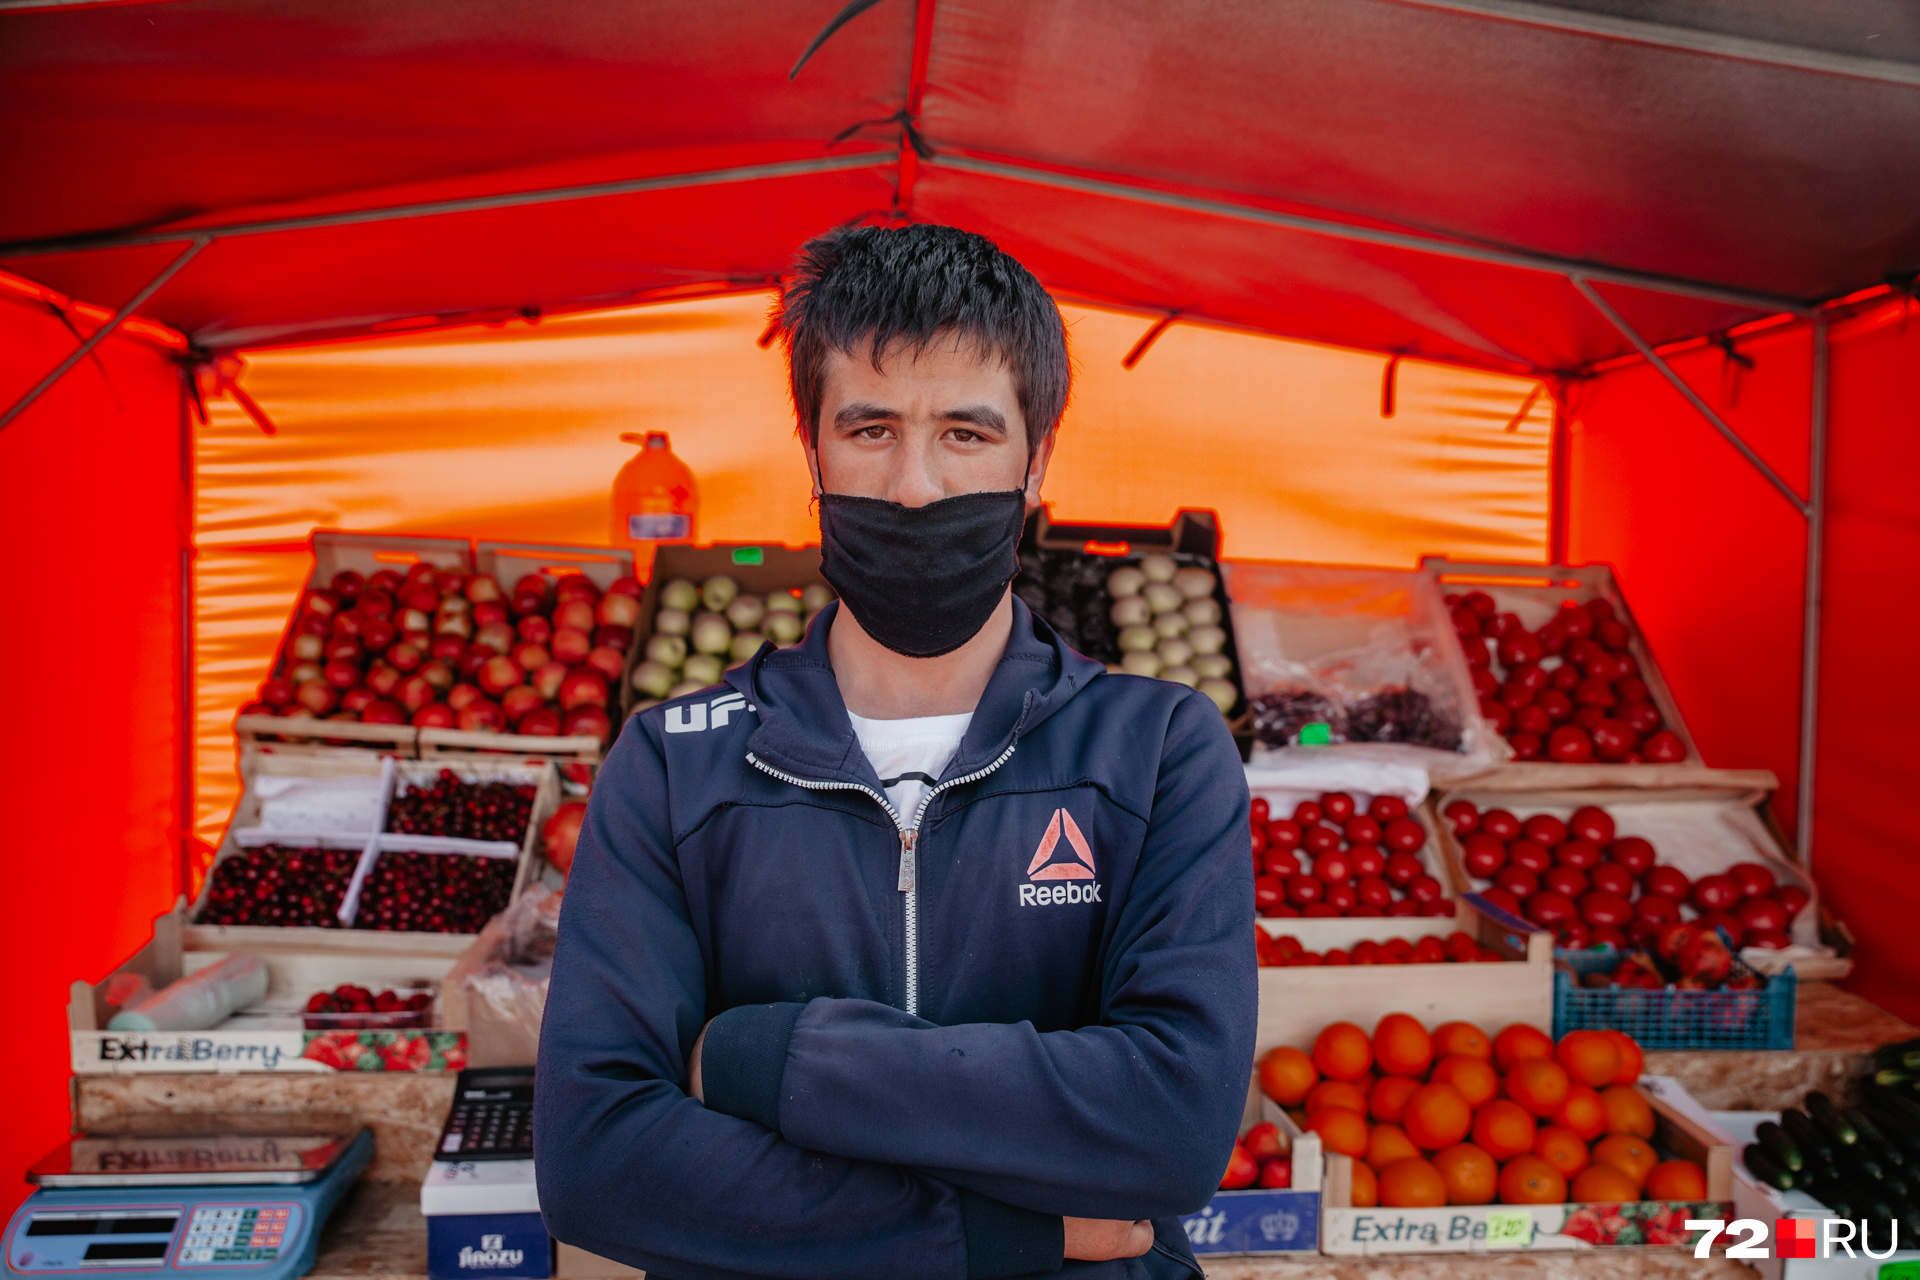 Большинство работников рынков и баз были в масках, когда общались с покупателями. Этот молодой человек — Алик Болтаев, он продает спелые овощи и фрукты